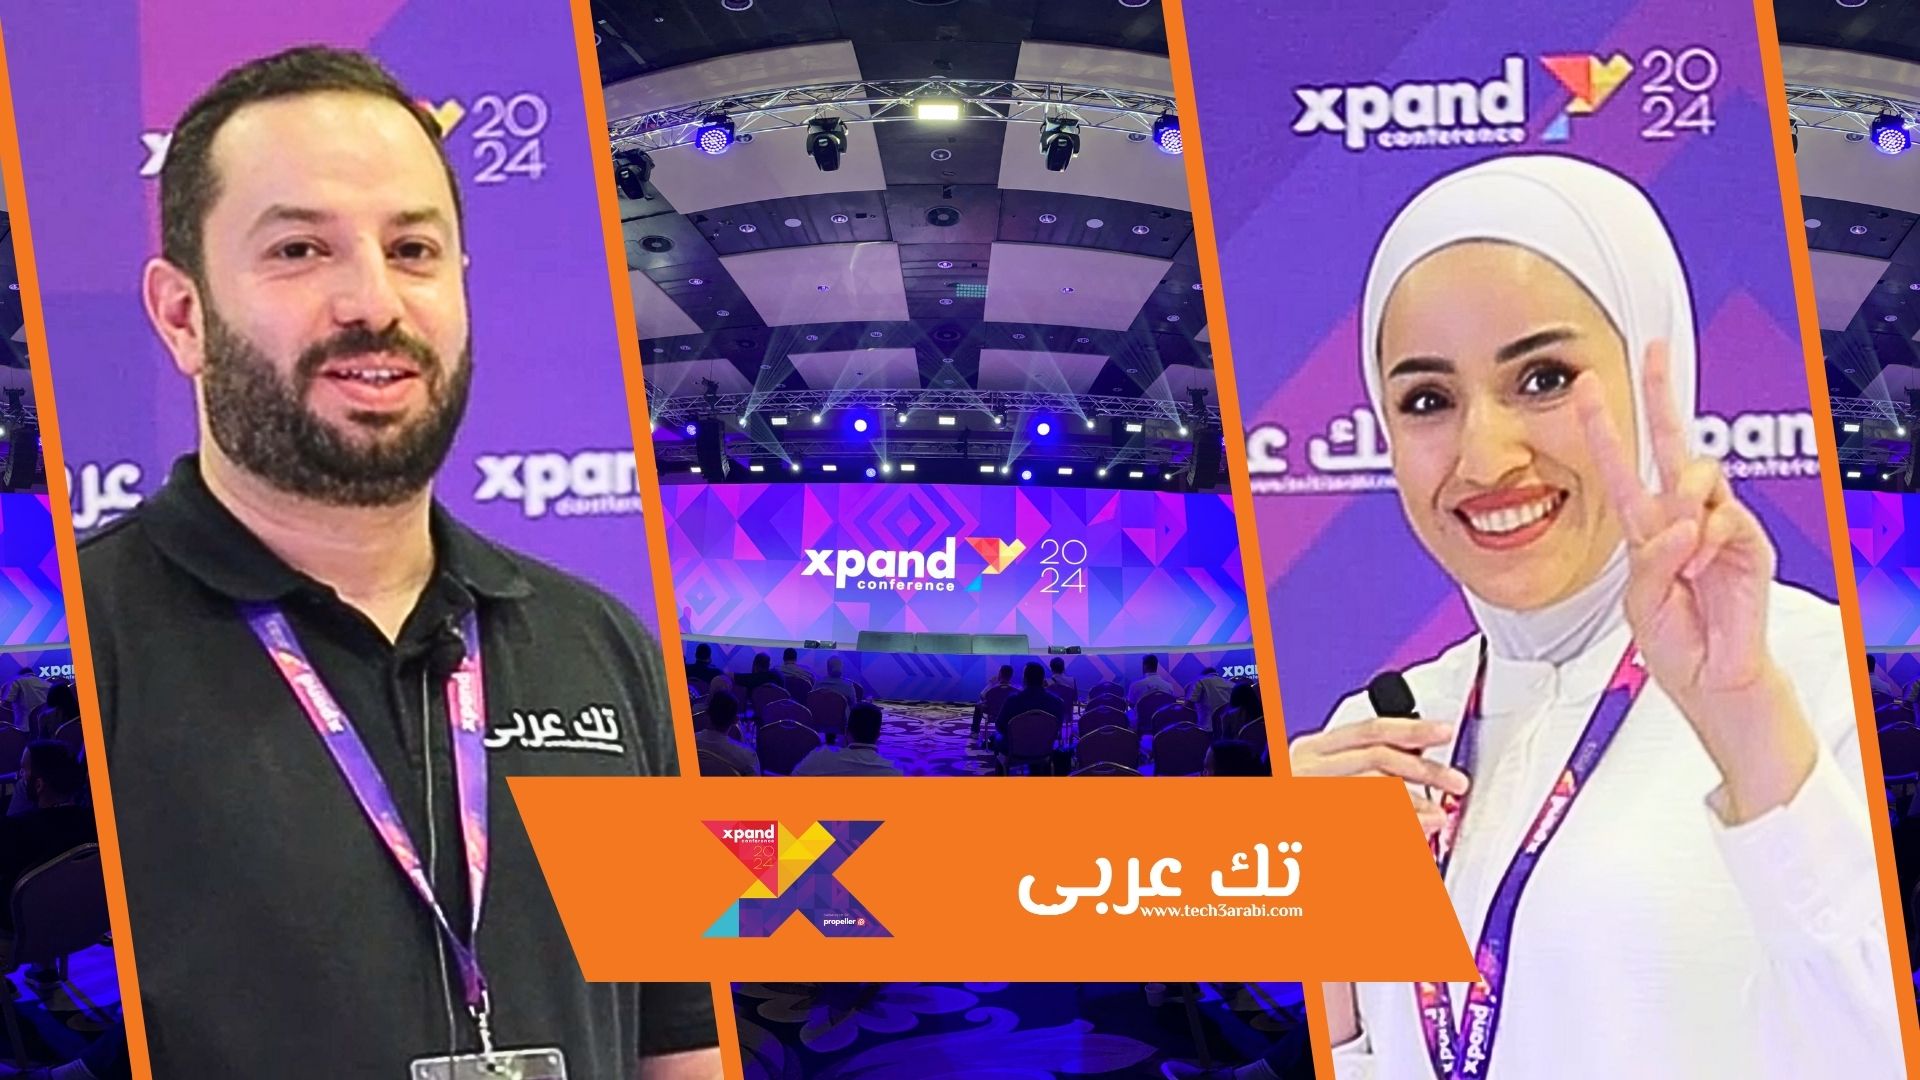 مقابلة فريق تك عربي مع سارة يونس - صانعة محتوى تقني و مديرة منتج في شركة المفكرون الصغار.